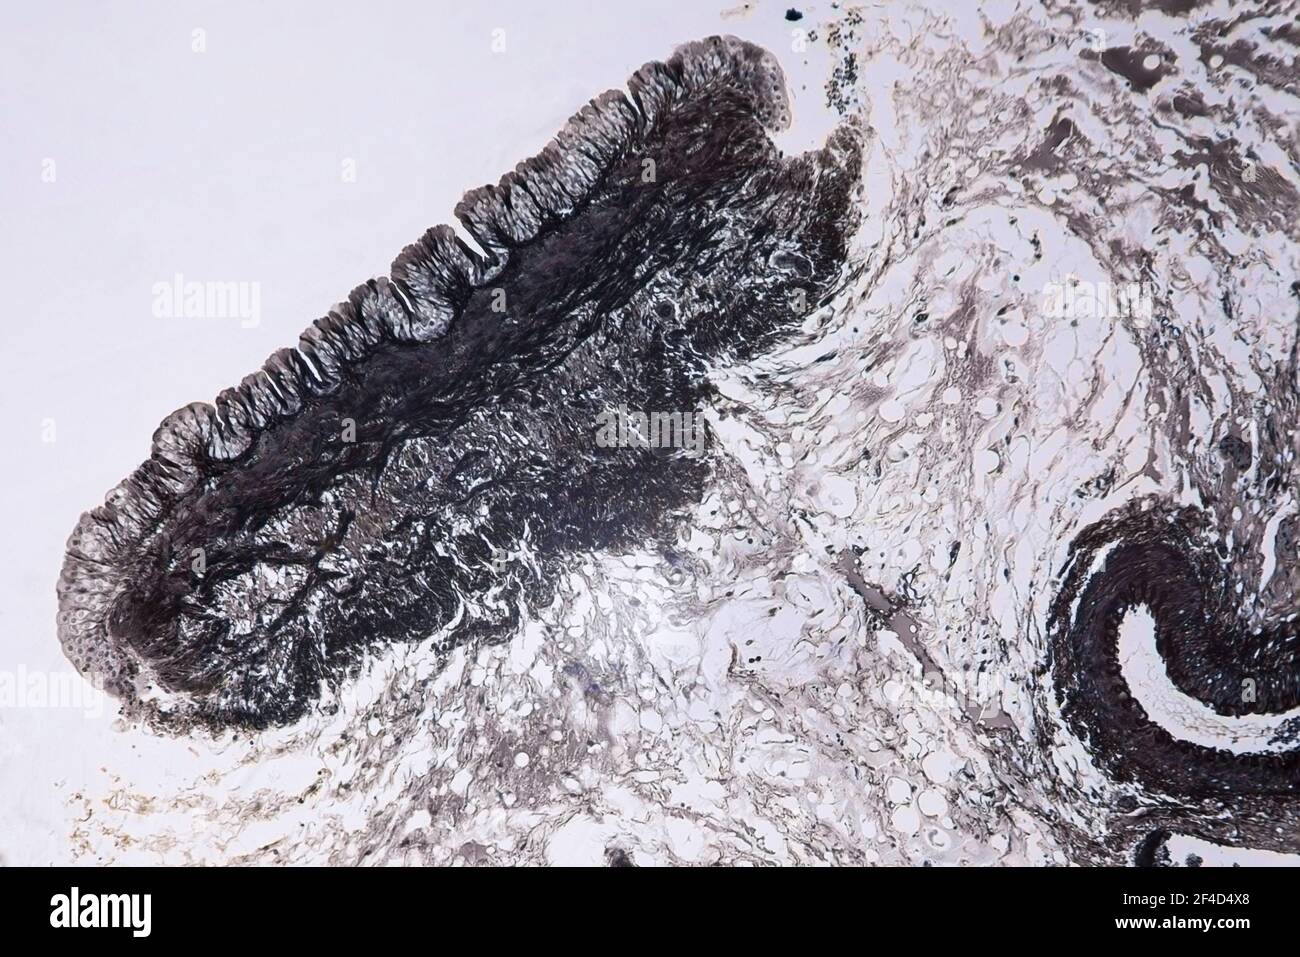 Mitochondrien im Gewebe, ein Querschnitt unter einem Lichtmikroskop bei 10-facher Vergrößerung. Stockfoto